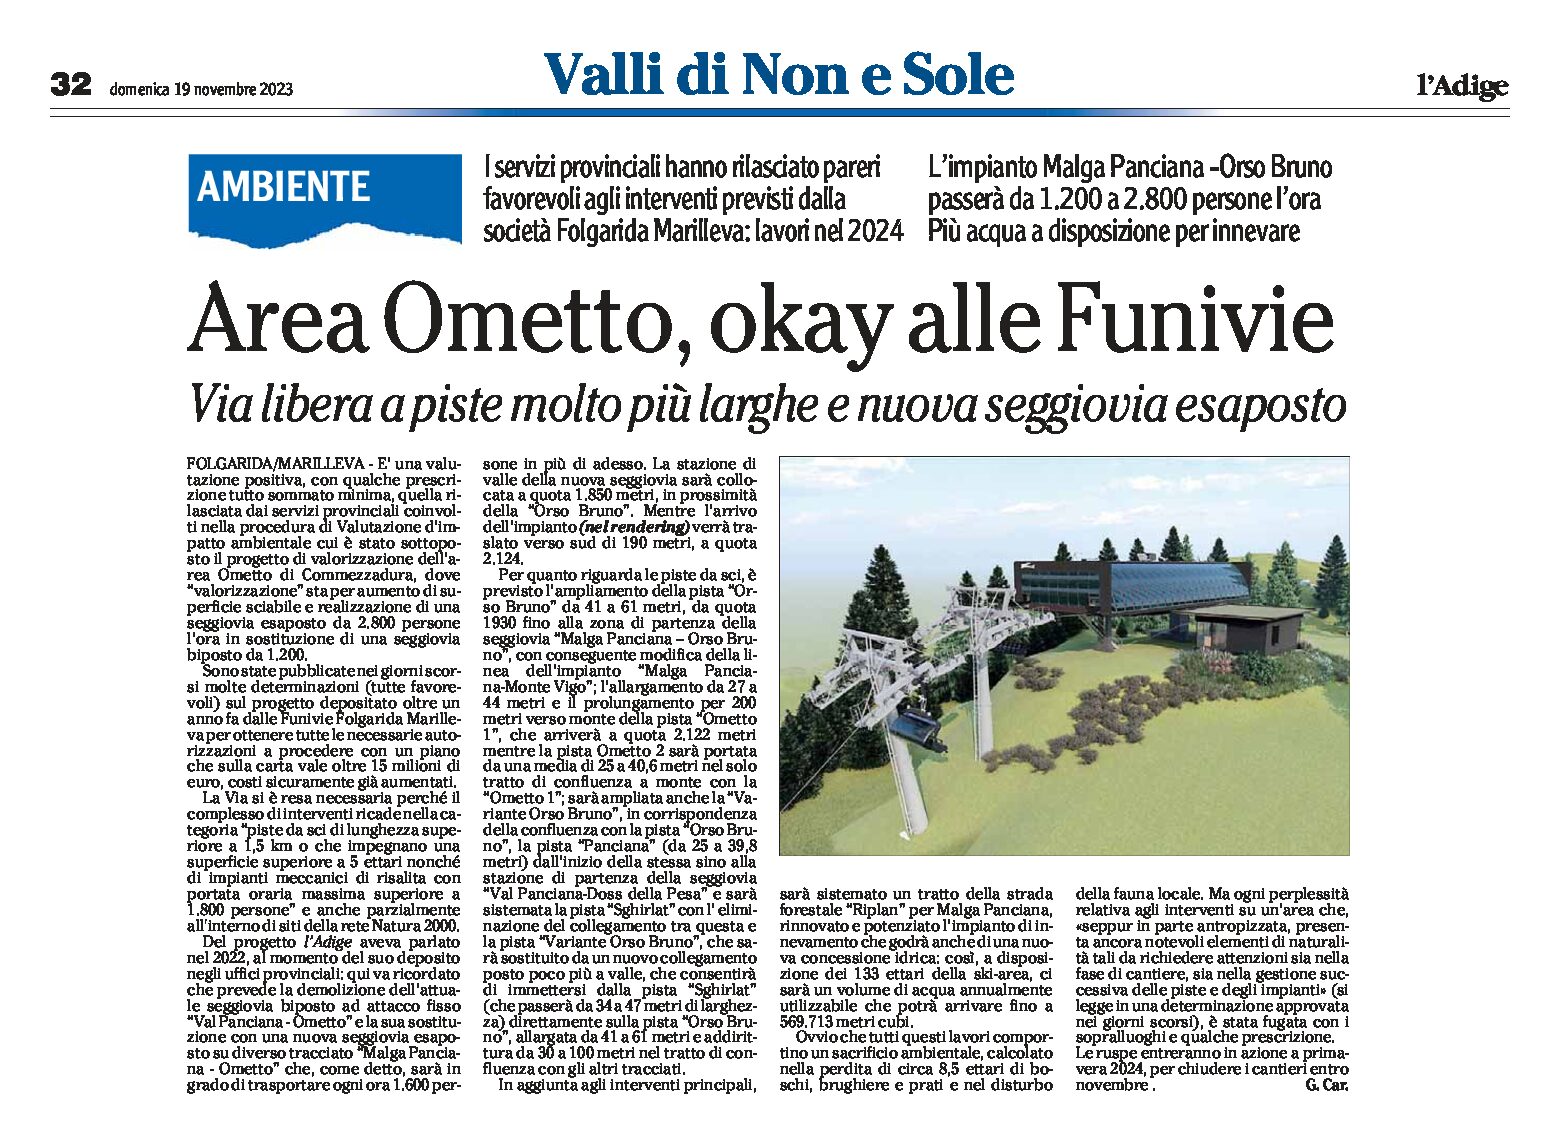 Folgarida Marilleva: area Ometto, okay alle Funivie